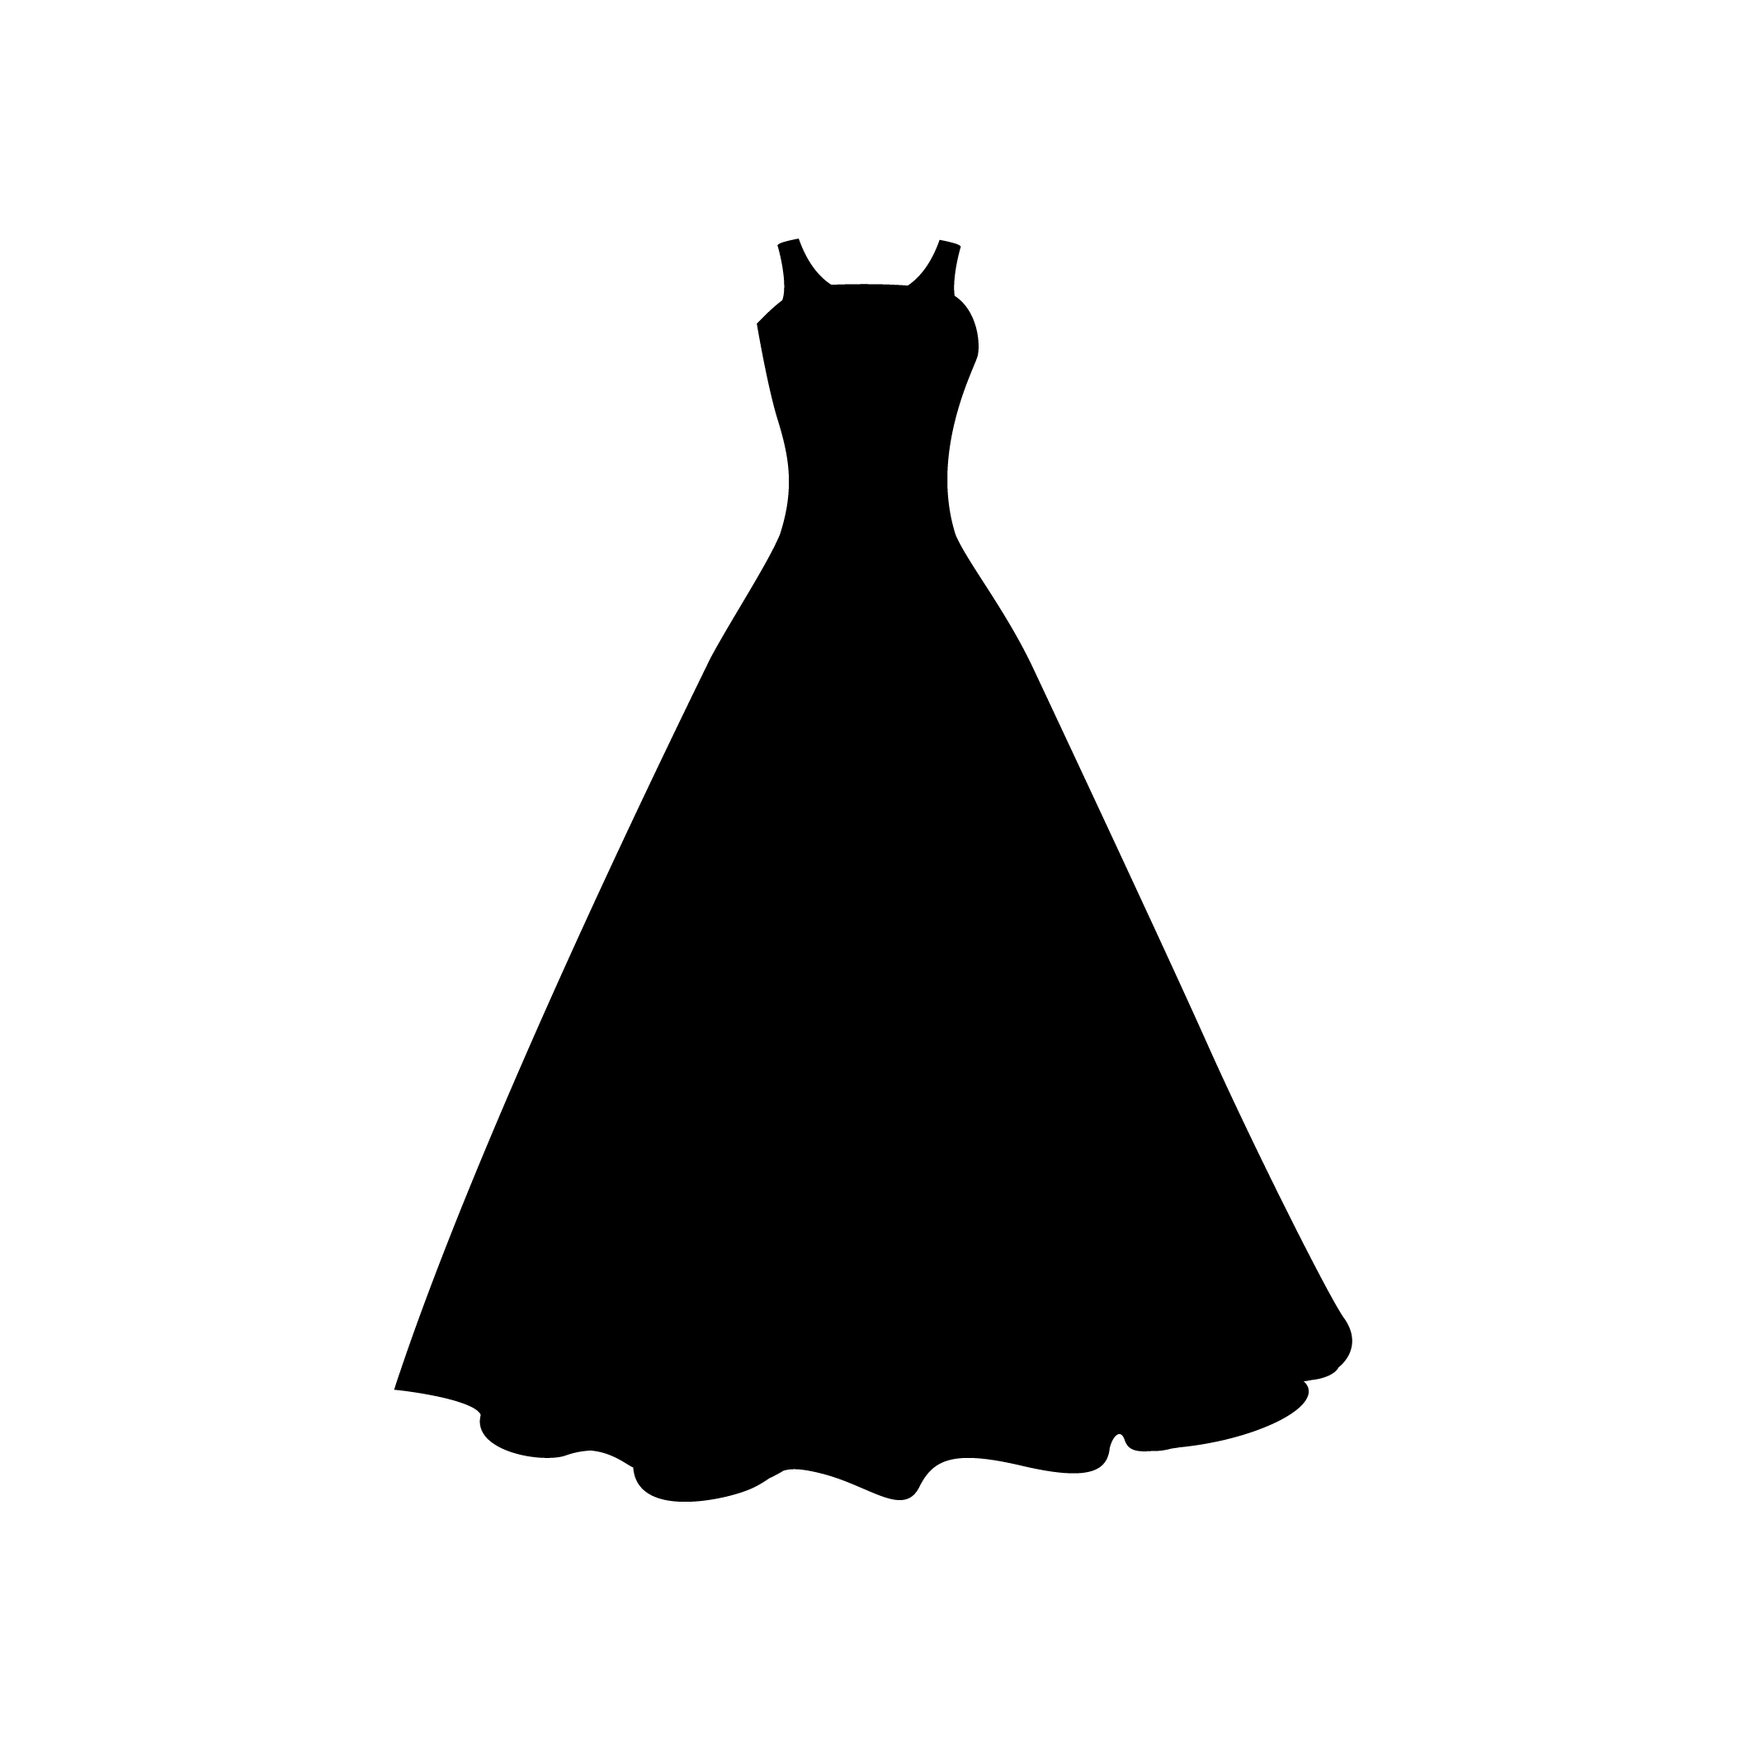 Wedding Dress Silhouette in Illustrator, EPS, SVG, JPG, PNG